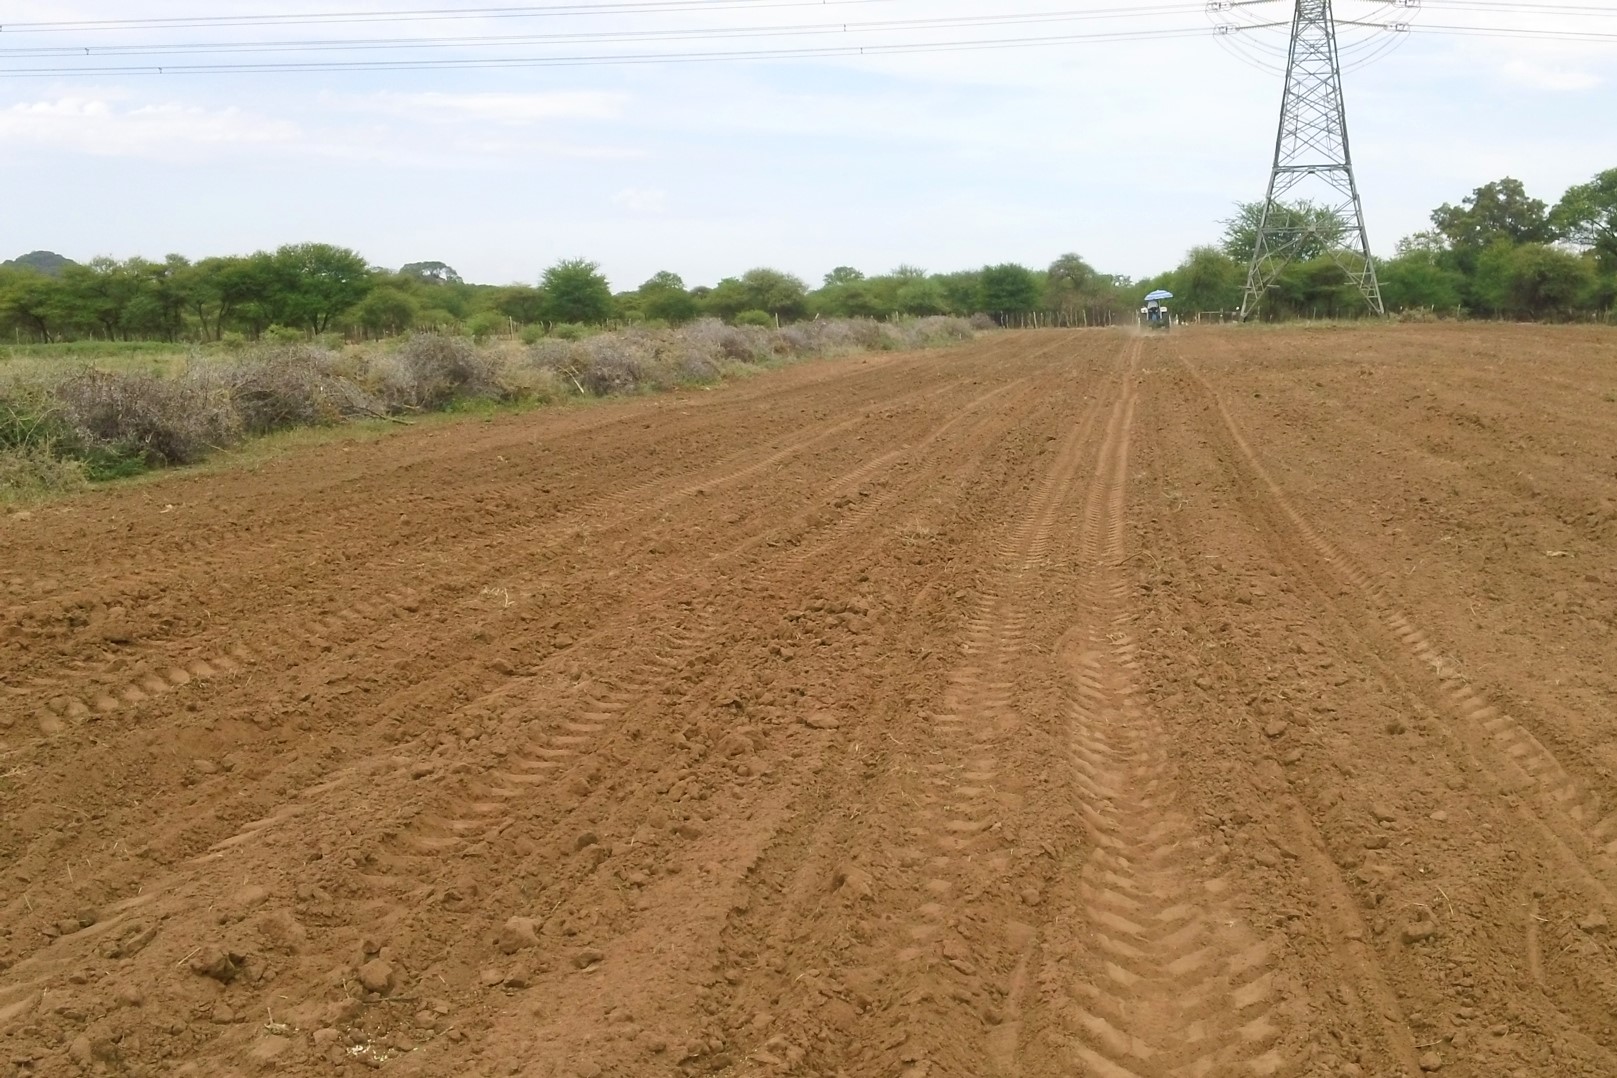 Cogent Farm's first field is plowed